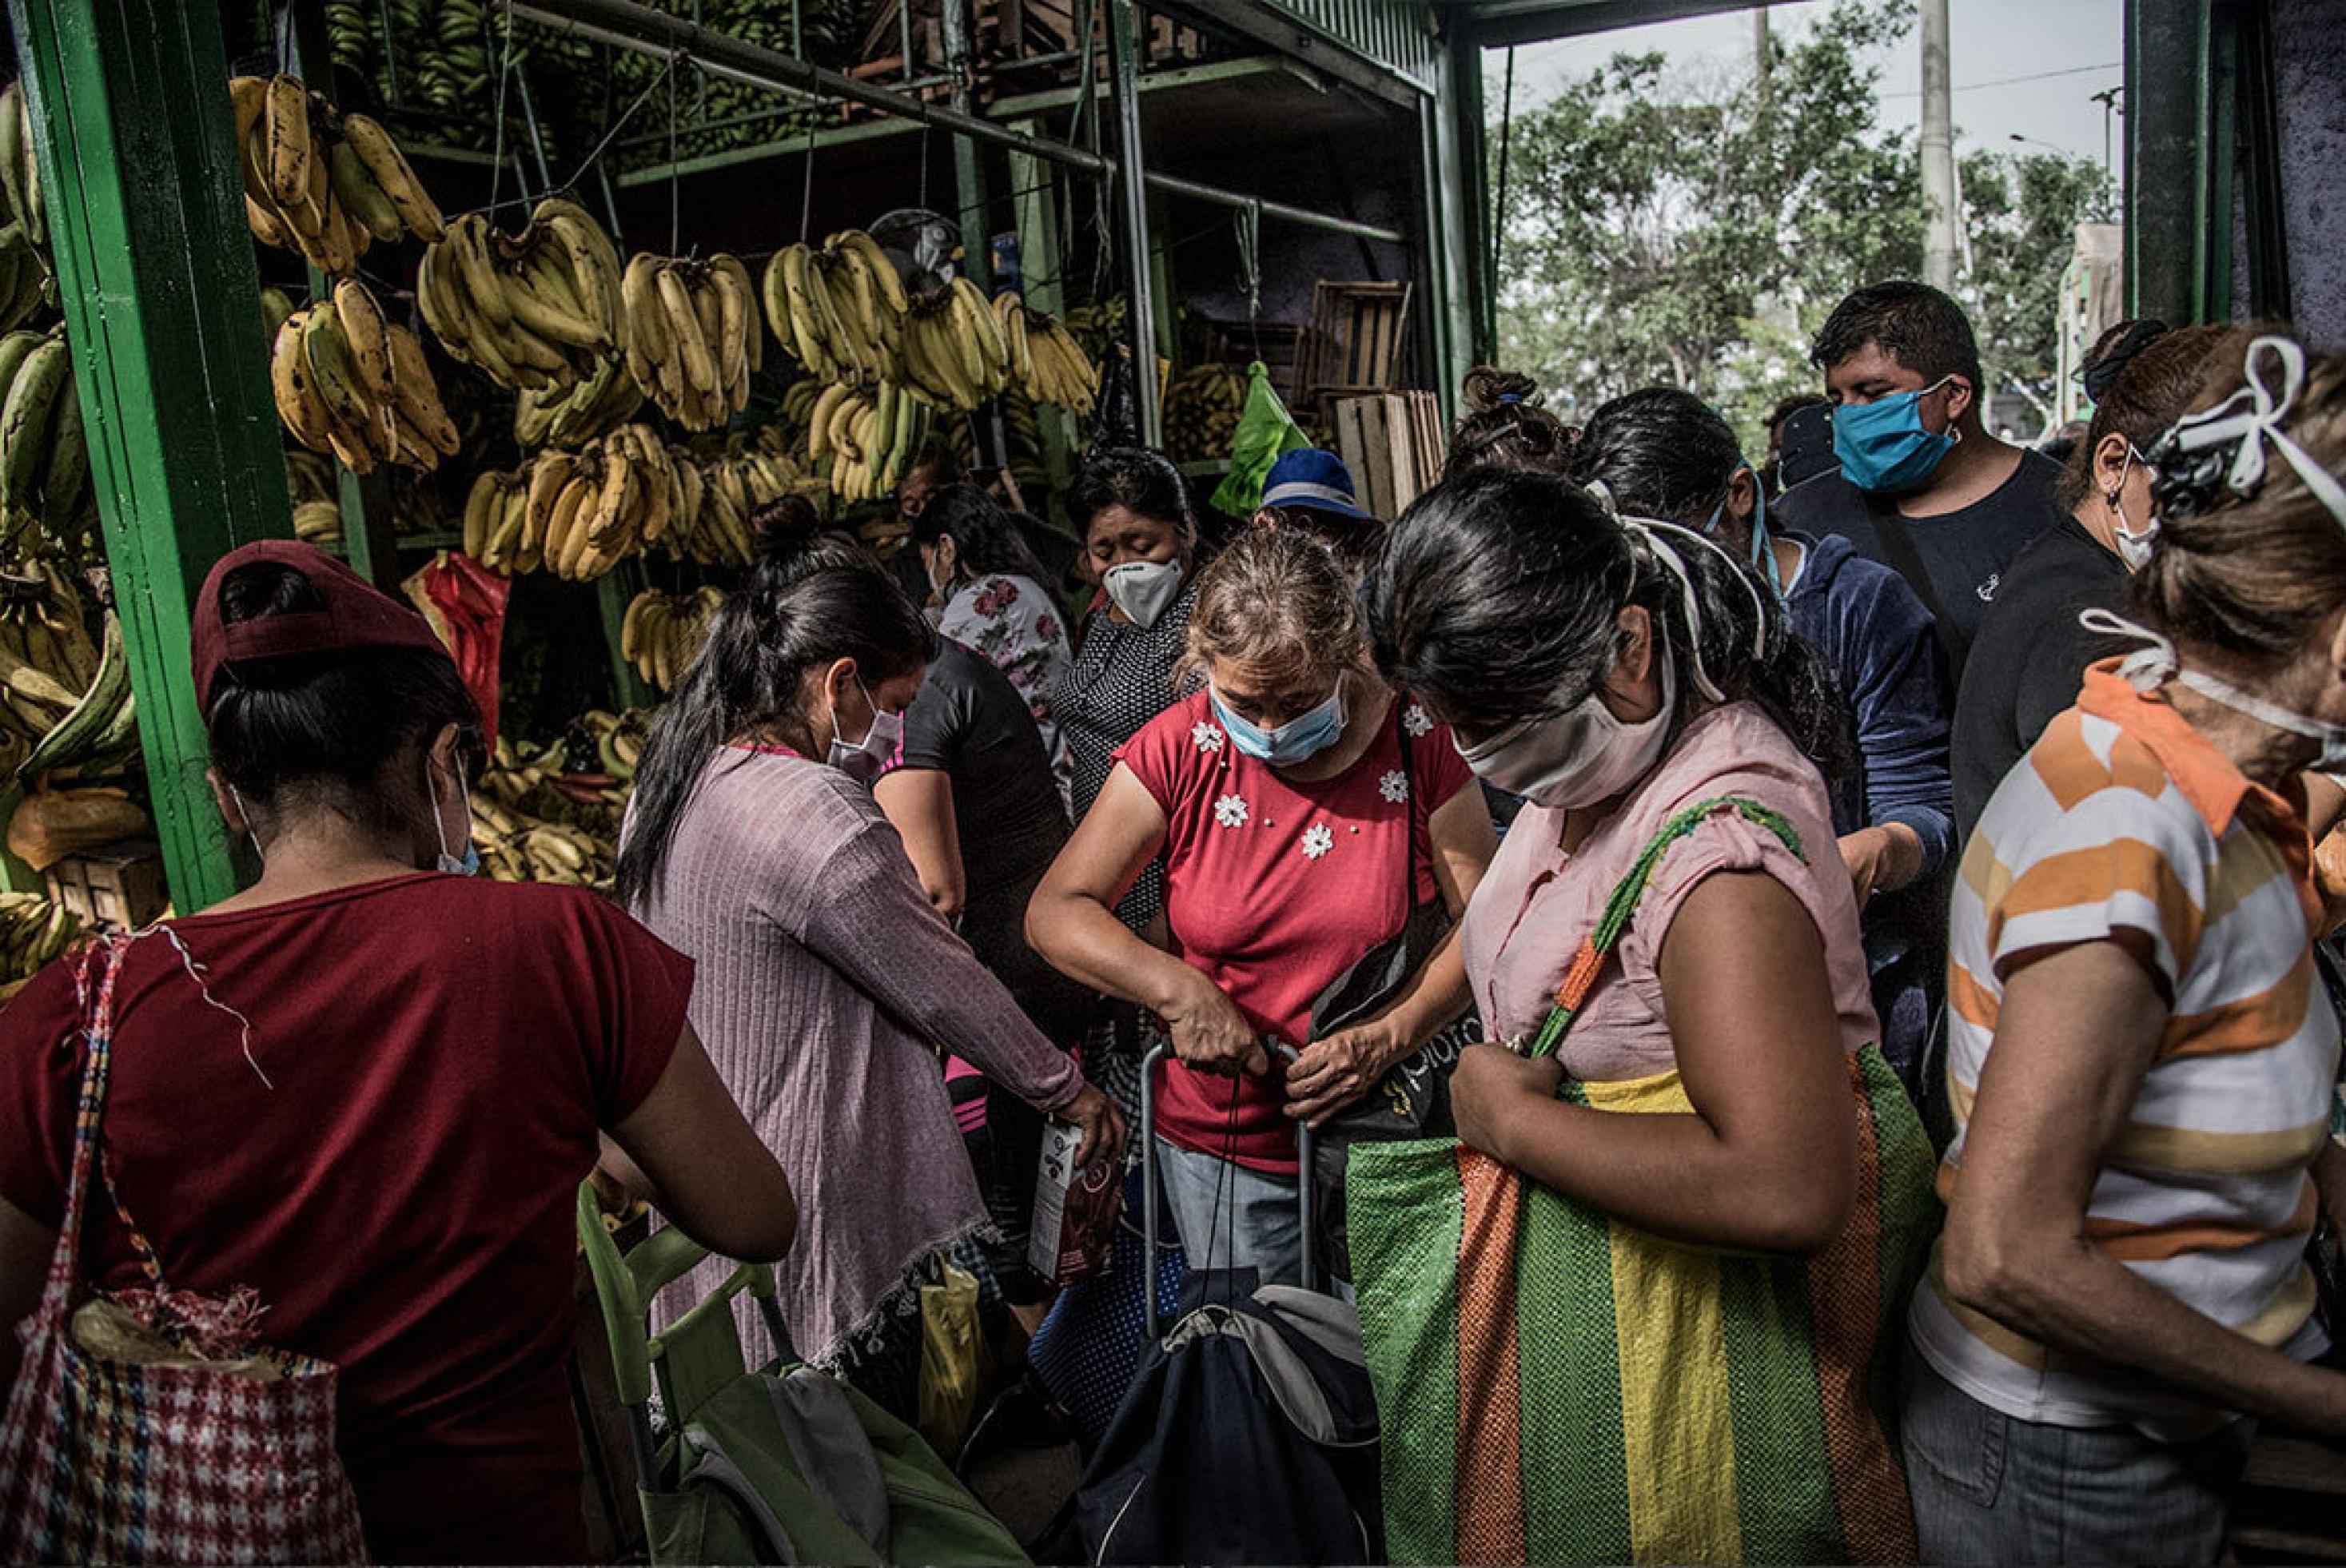 Peruanische Frauen stehen dicht gedrängt mit Tragetaschen und Wägelchen vor einem Bananenstand in einer Markthalle in Lima.